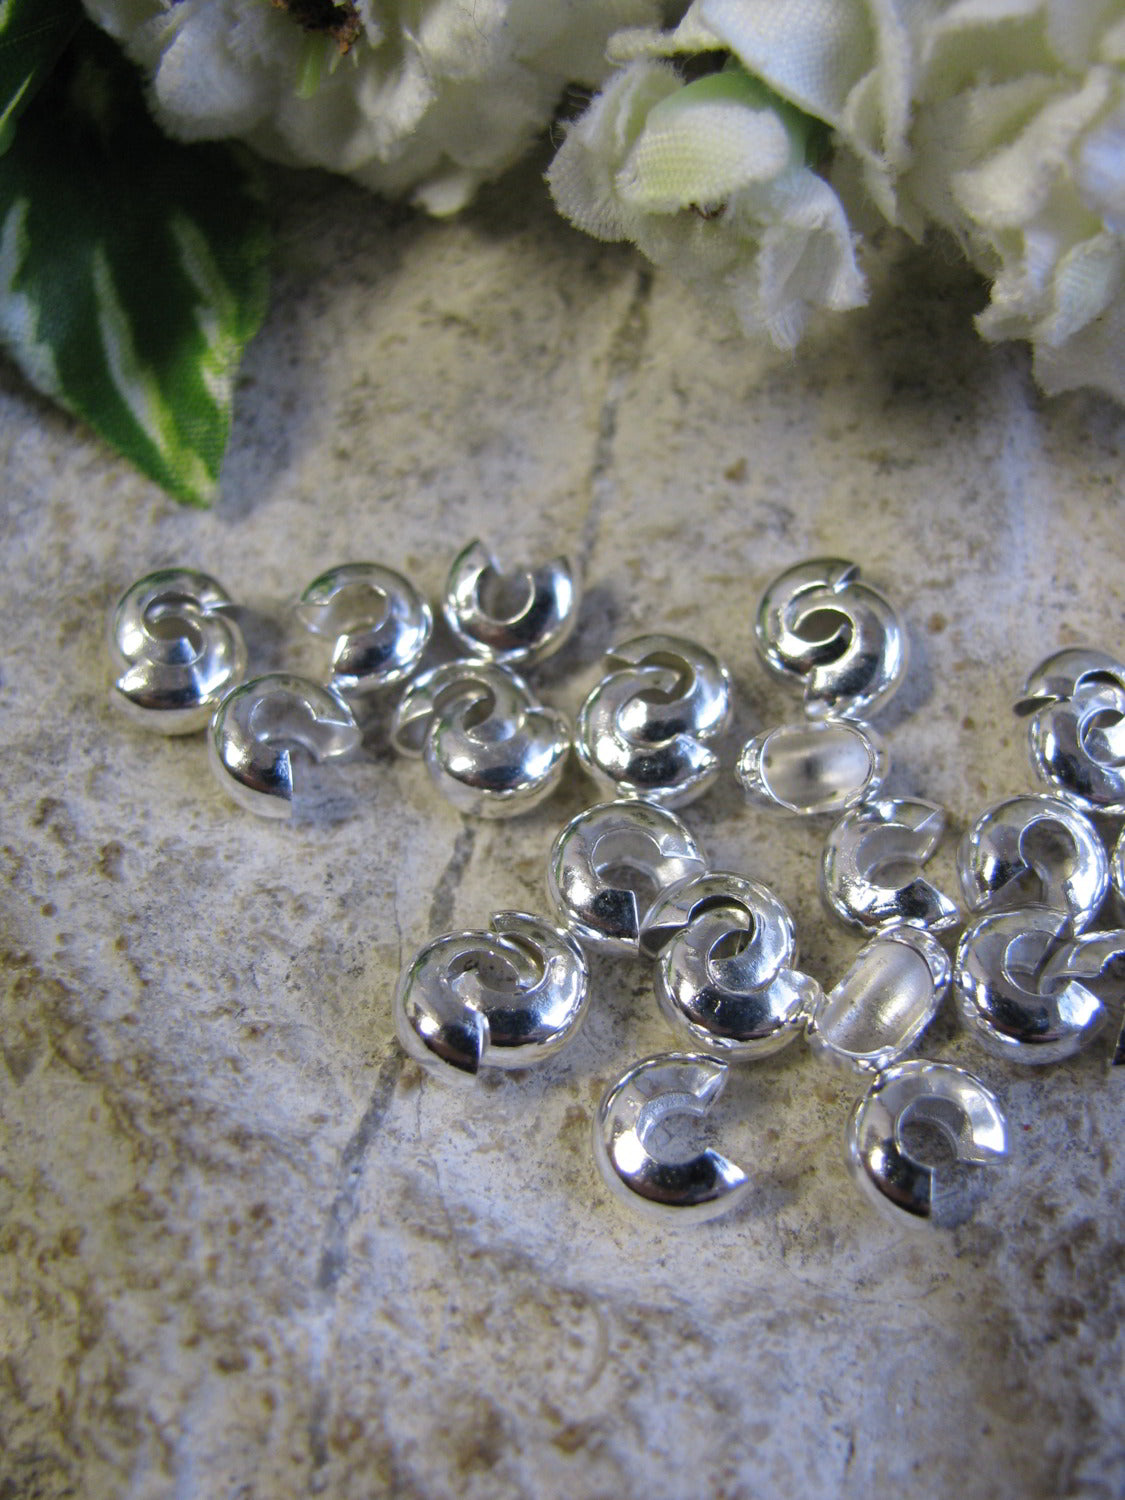 30 Kaschierperlen silberfarben, 6,1 x 3,9 mm, Perlen basteln, Quetschperlen